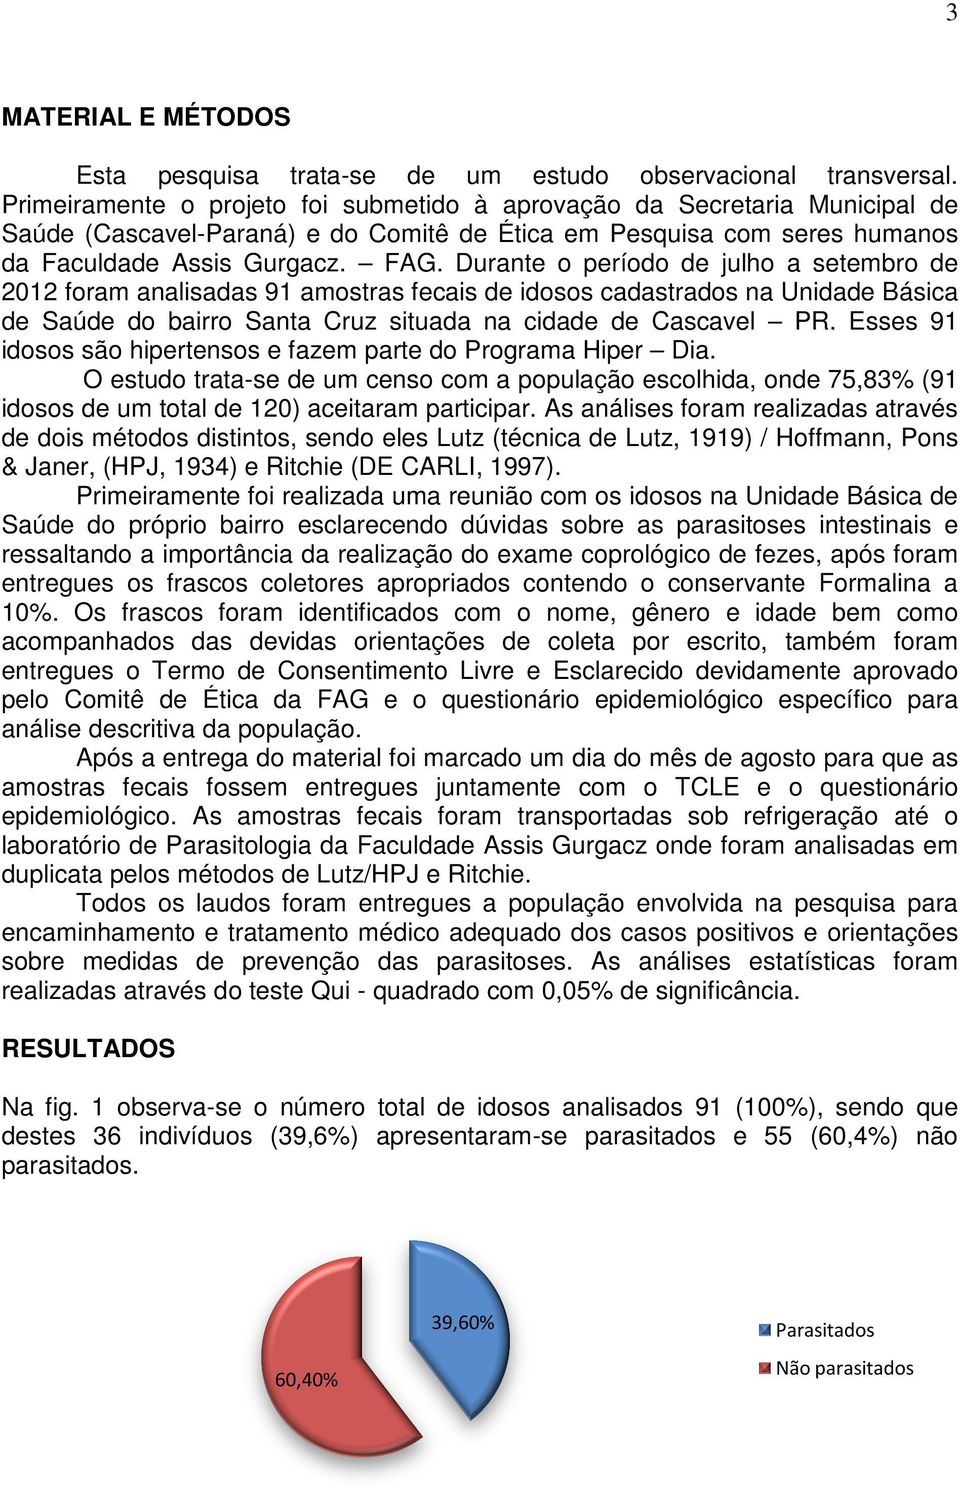 Durante o período de julho a setembro de 2012 foram analisadas 91 amostras fecais de idosos cadastrados na Unidade Básica de Saúde do bairro Santa Cruz situada na cidade de Cascavel PR.